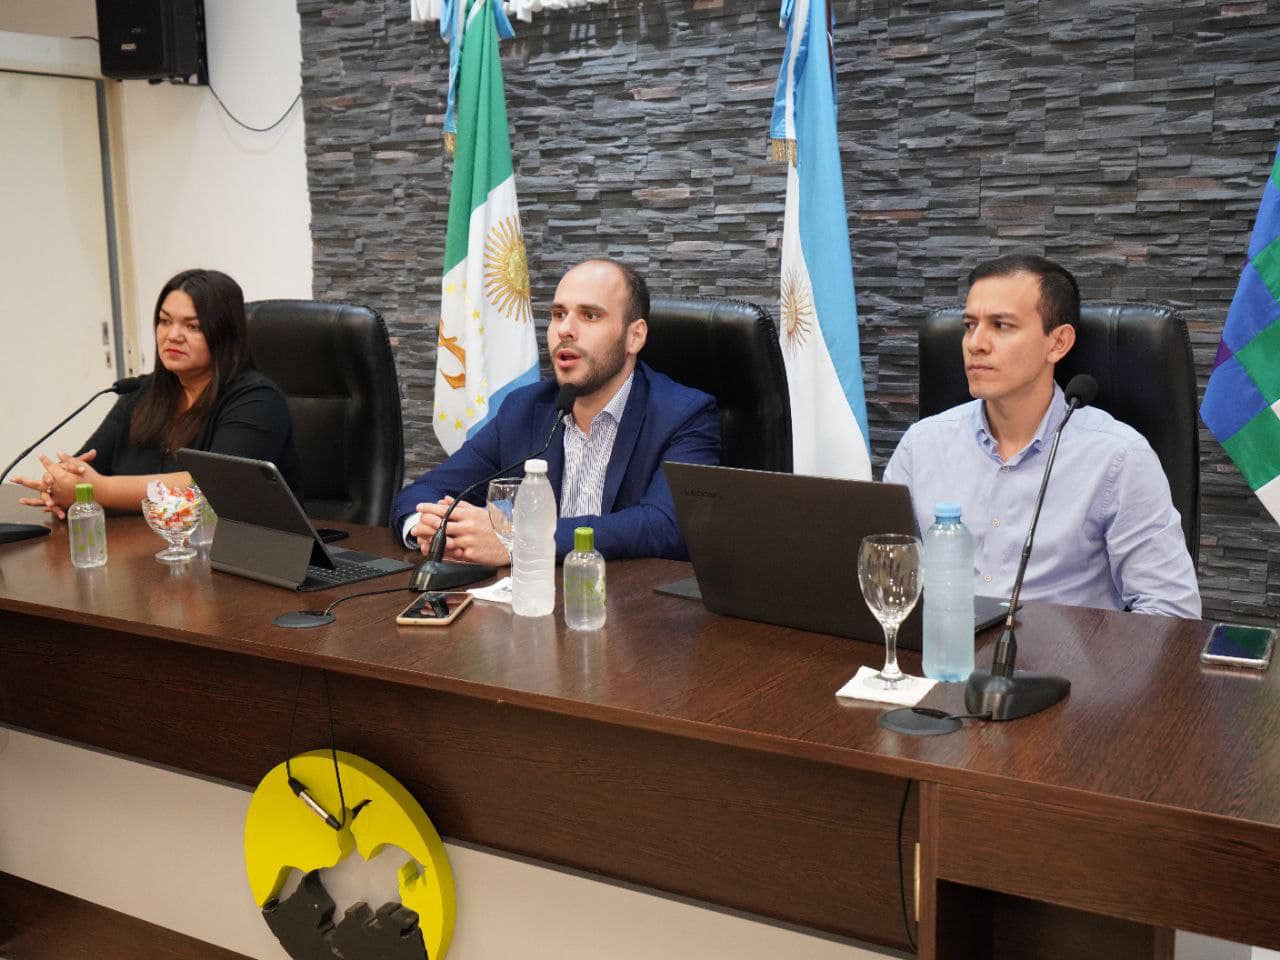 Gral. San Martín: Mauro Leiva informo un aumento del 47% para trabajadores municipales